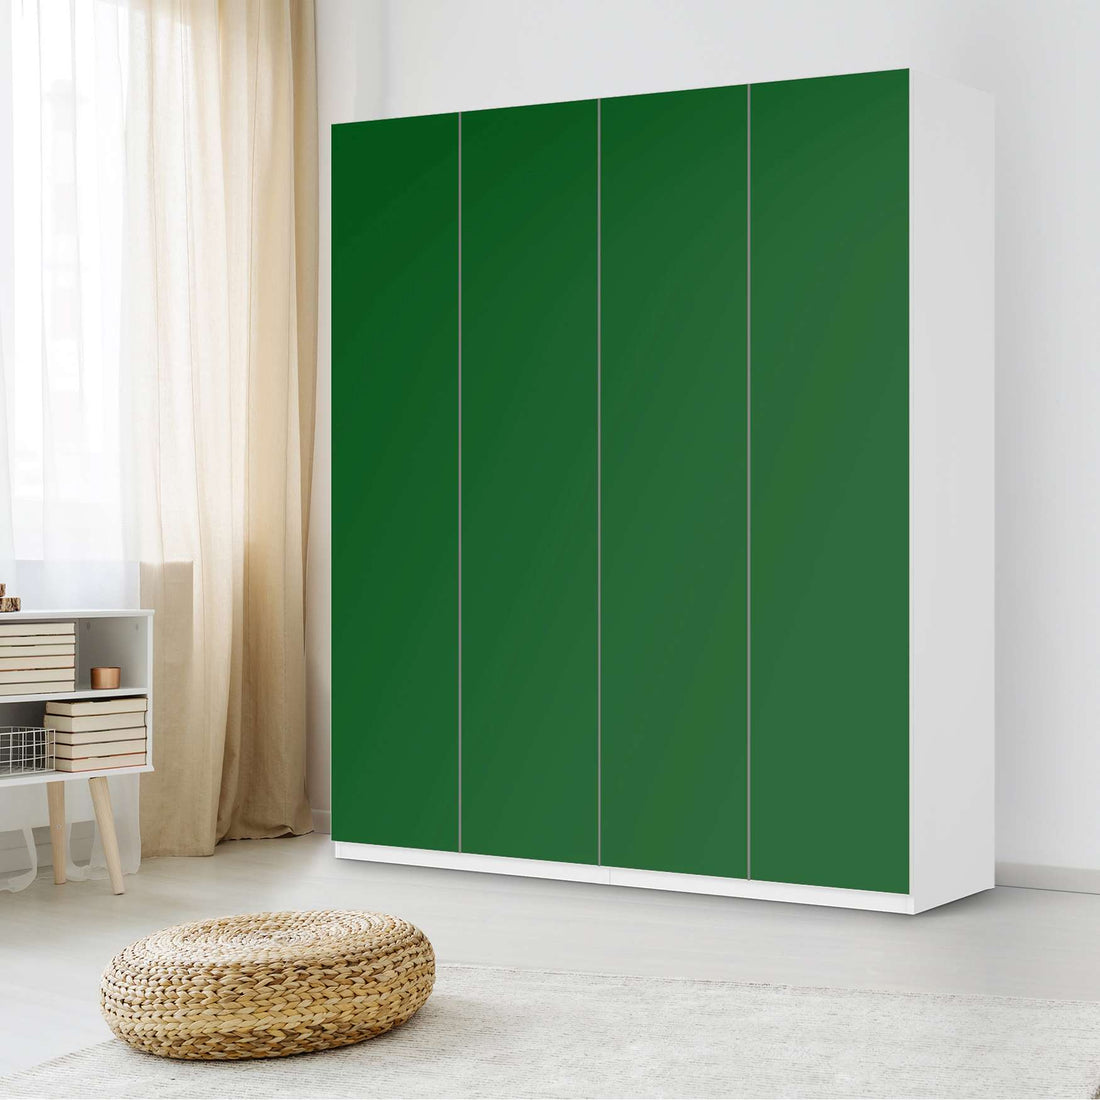 Möbelfolie Grün Dark - IKEA Pax Schrank 236 cm Höhe - 4 Türen - Schlafzimmer